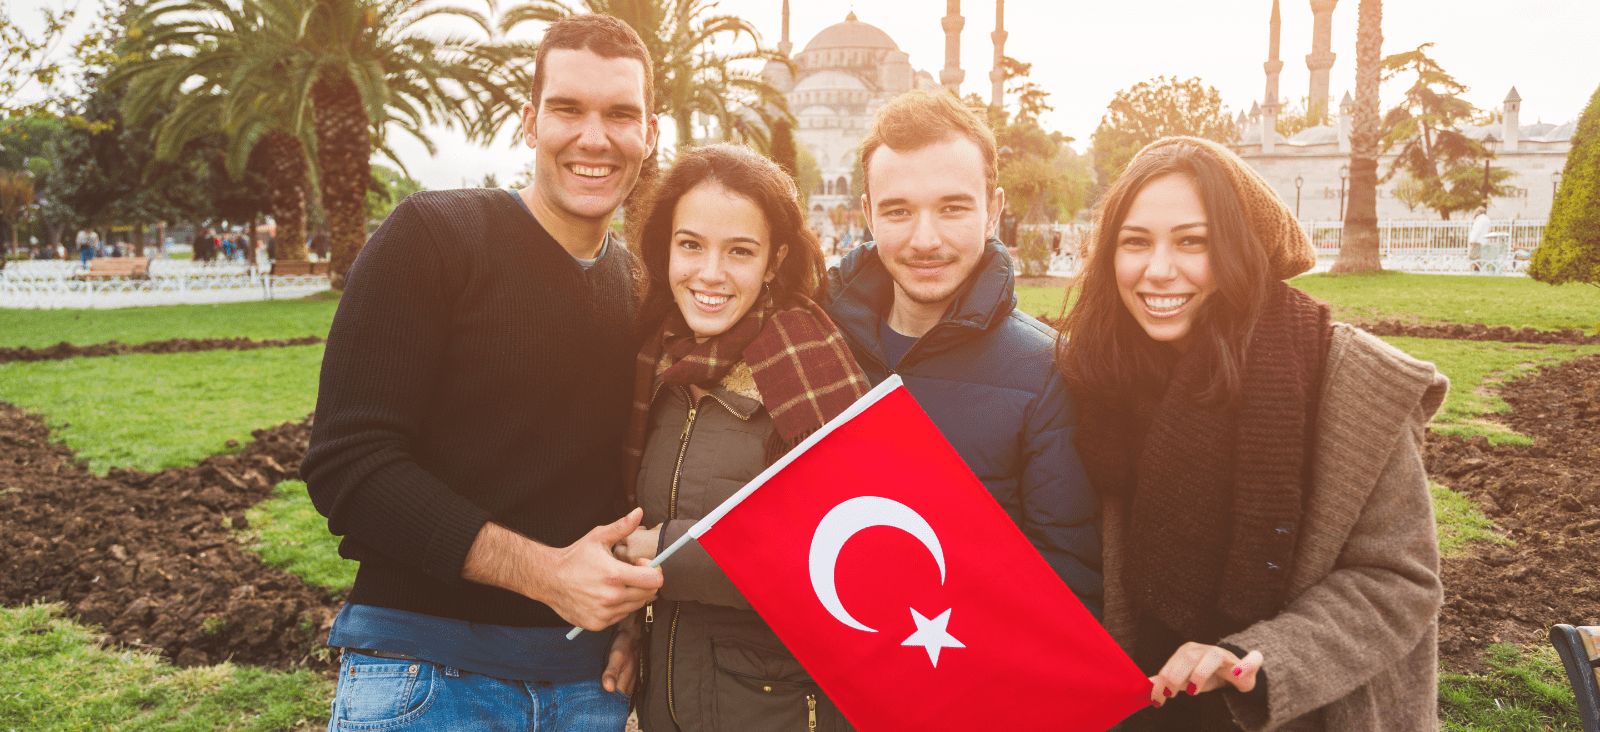 آموزش زبان ترکی استانبولی، تحصیل در ترکیه و ترجمه رسمی و غیر رسمی